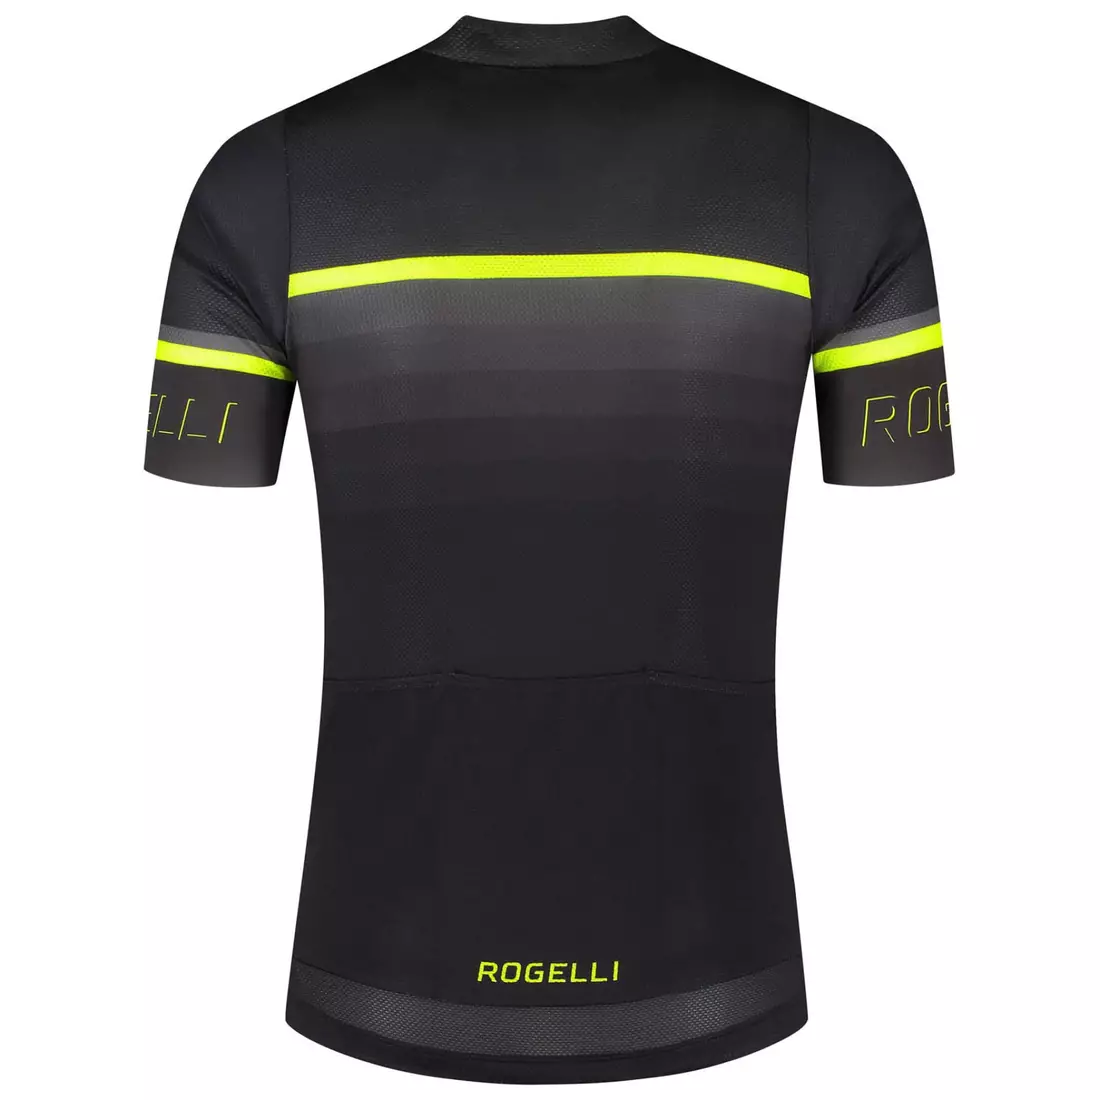 Rogelli HERO II pánský cyklistický dres, černý fluor